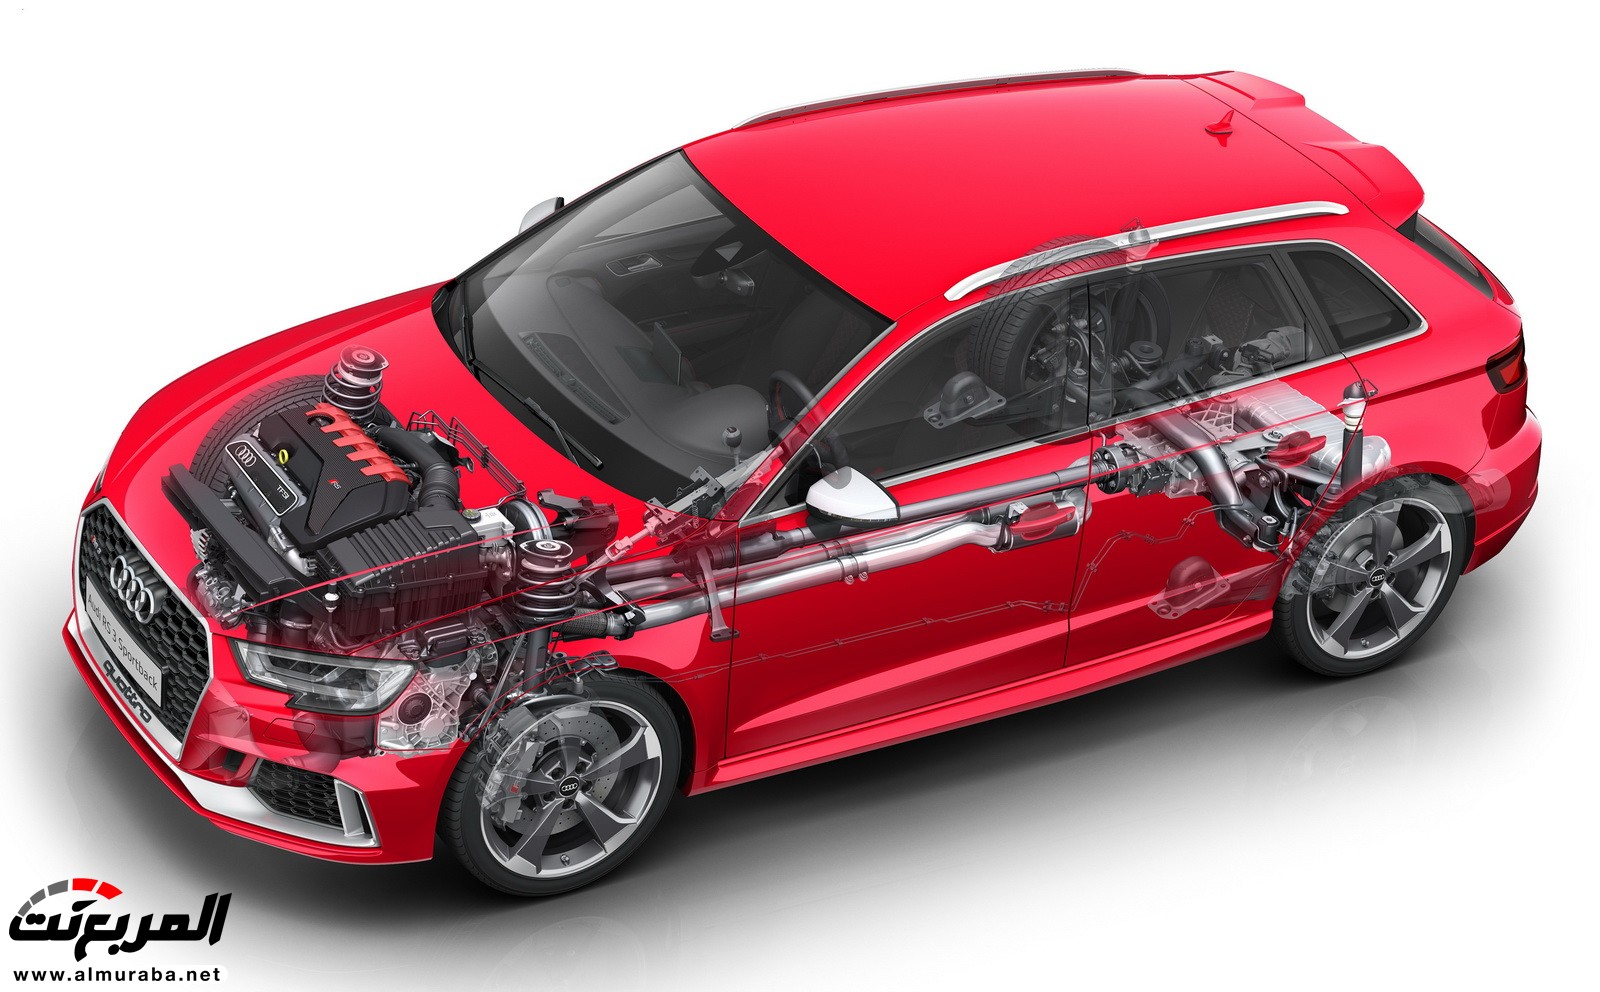 "أودي" تكشف عن RS3 الجديدة كليا 2018 بقوة 395 حصان Audi 59